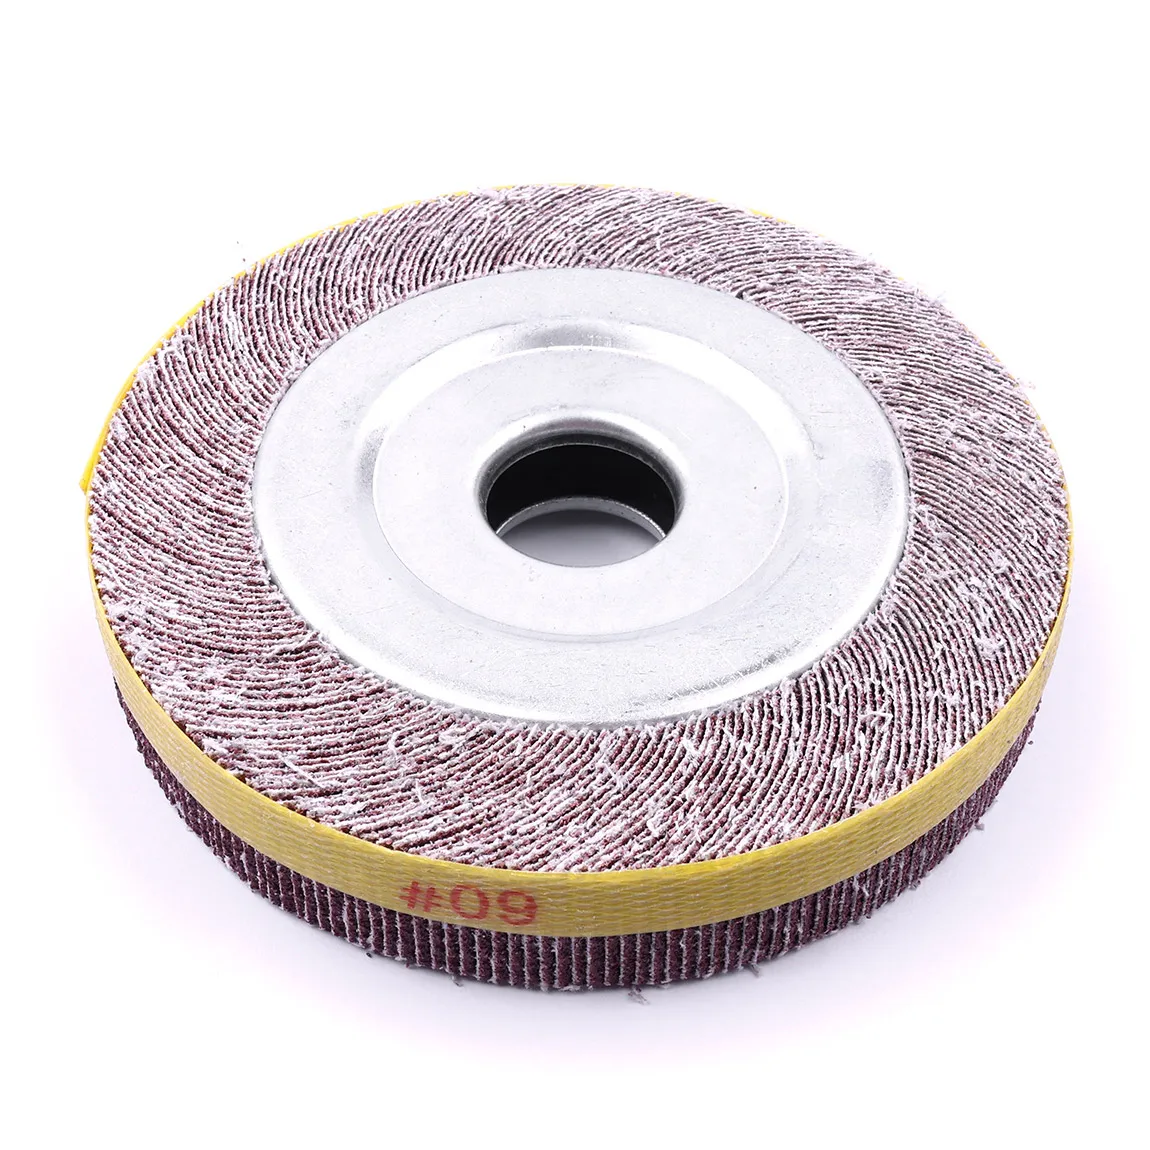 1 шт. абразивный лоскут Wheel" x1" x" Оксид алюминия 80 зернистый немонтированный шлифовальный диск